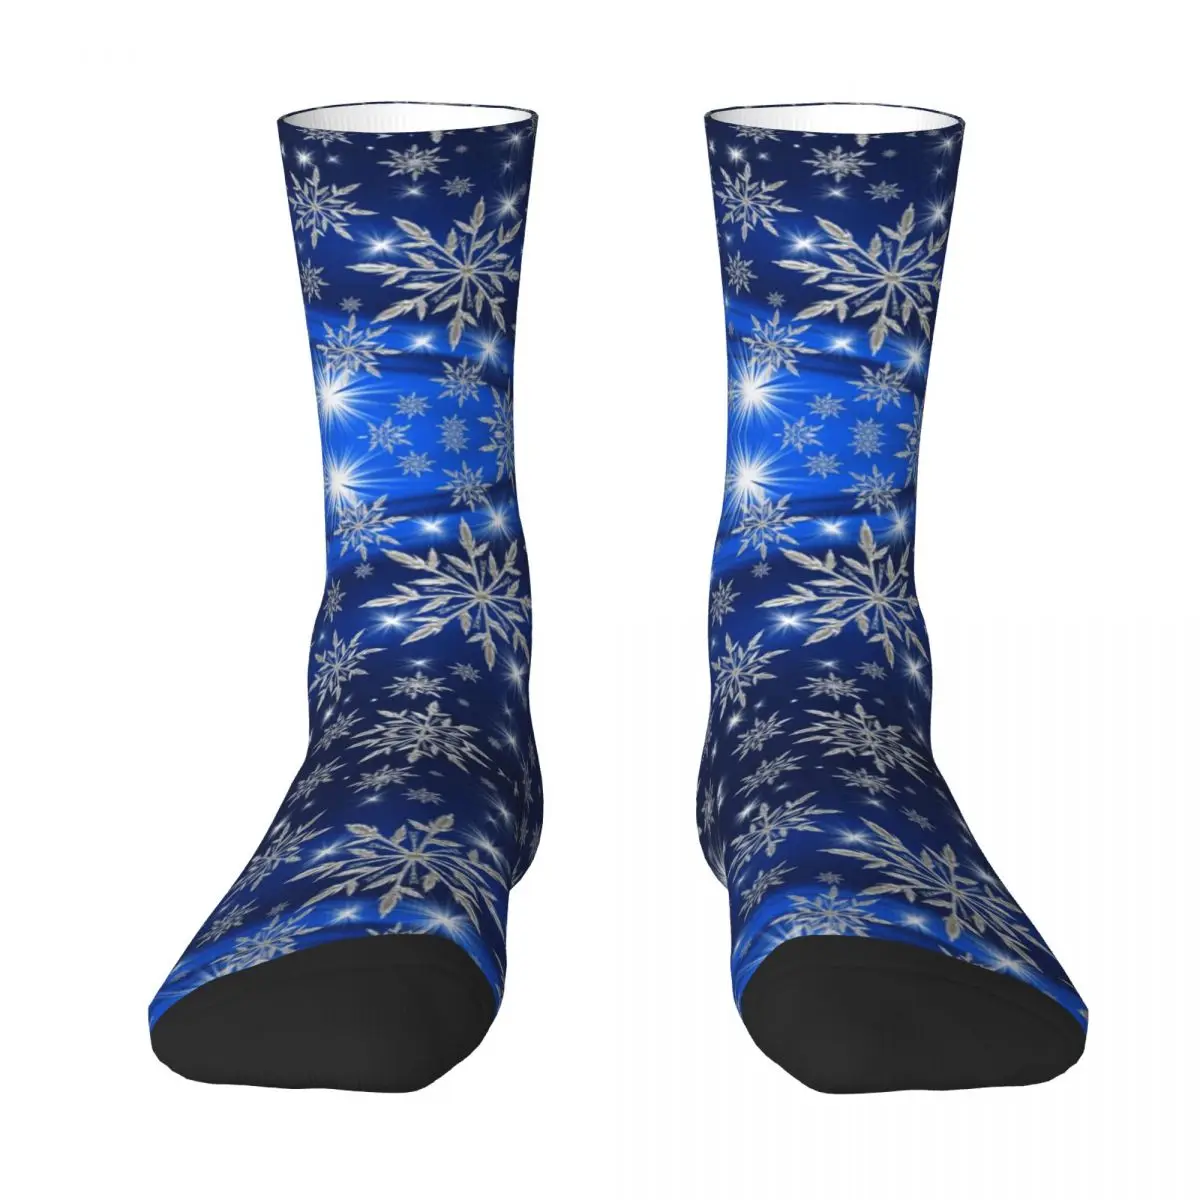 Чулок Snowflakes R92 с забавным рисунком, лучшая покупка, Саркастический набор эластичных носков контрастного цвета.